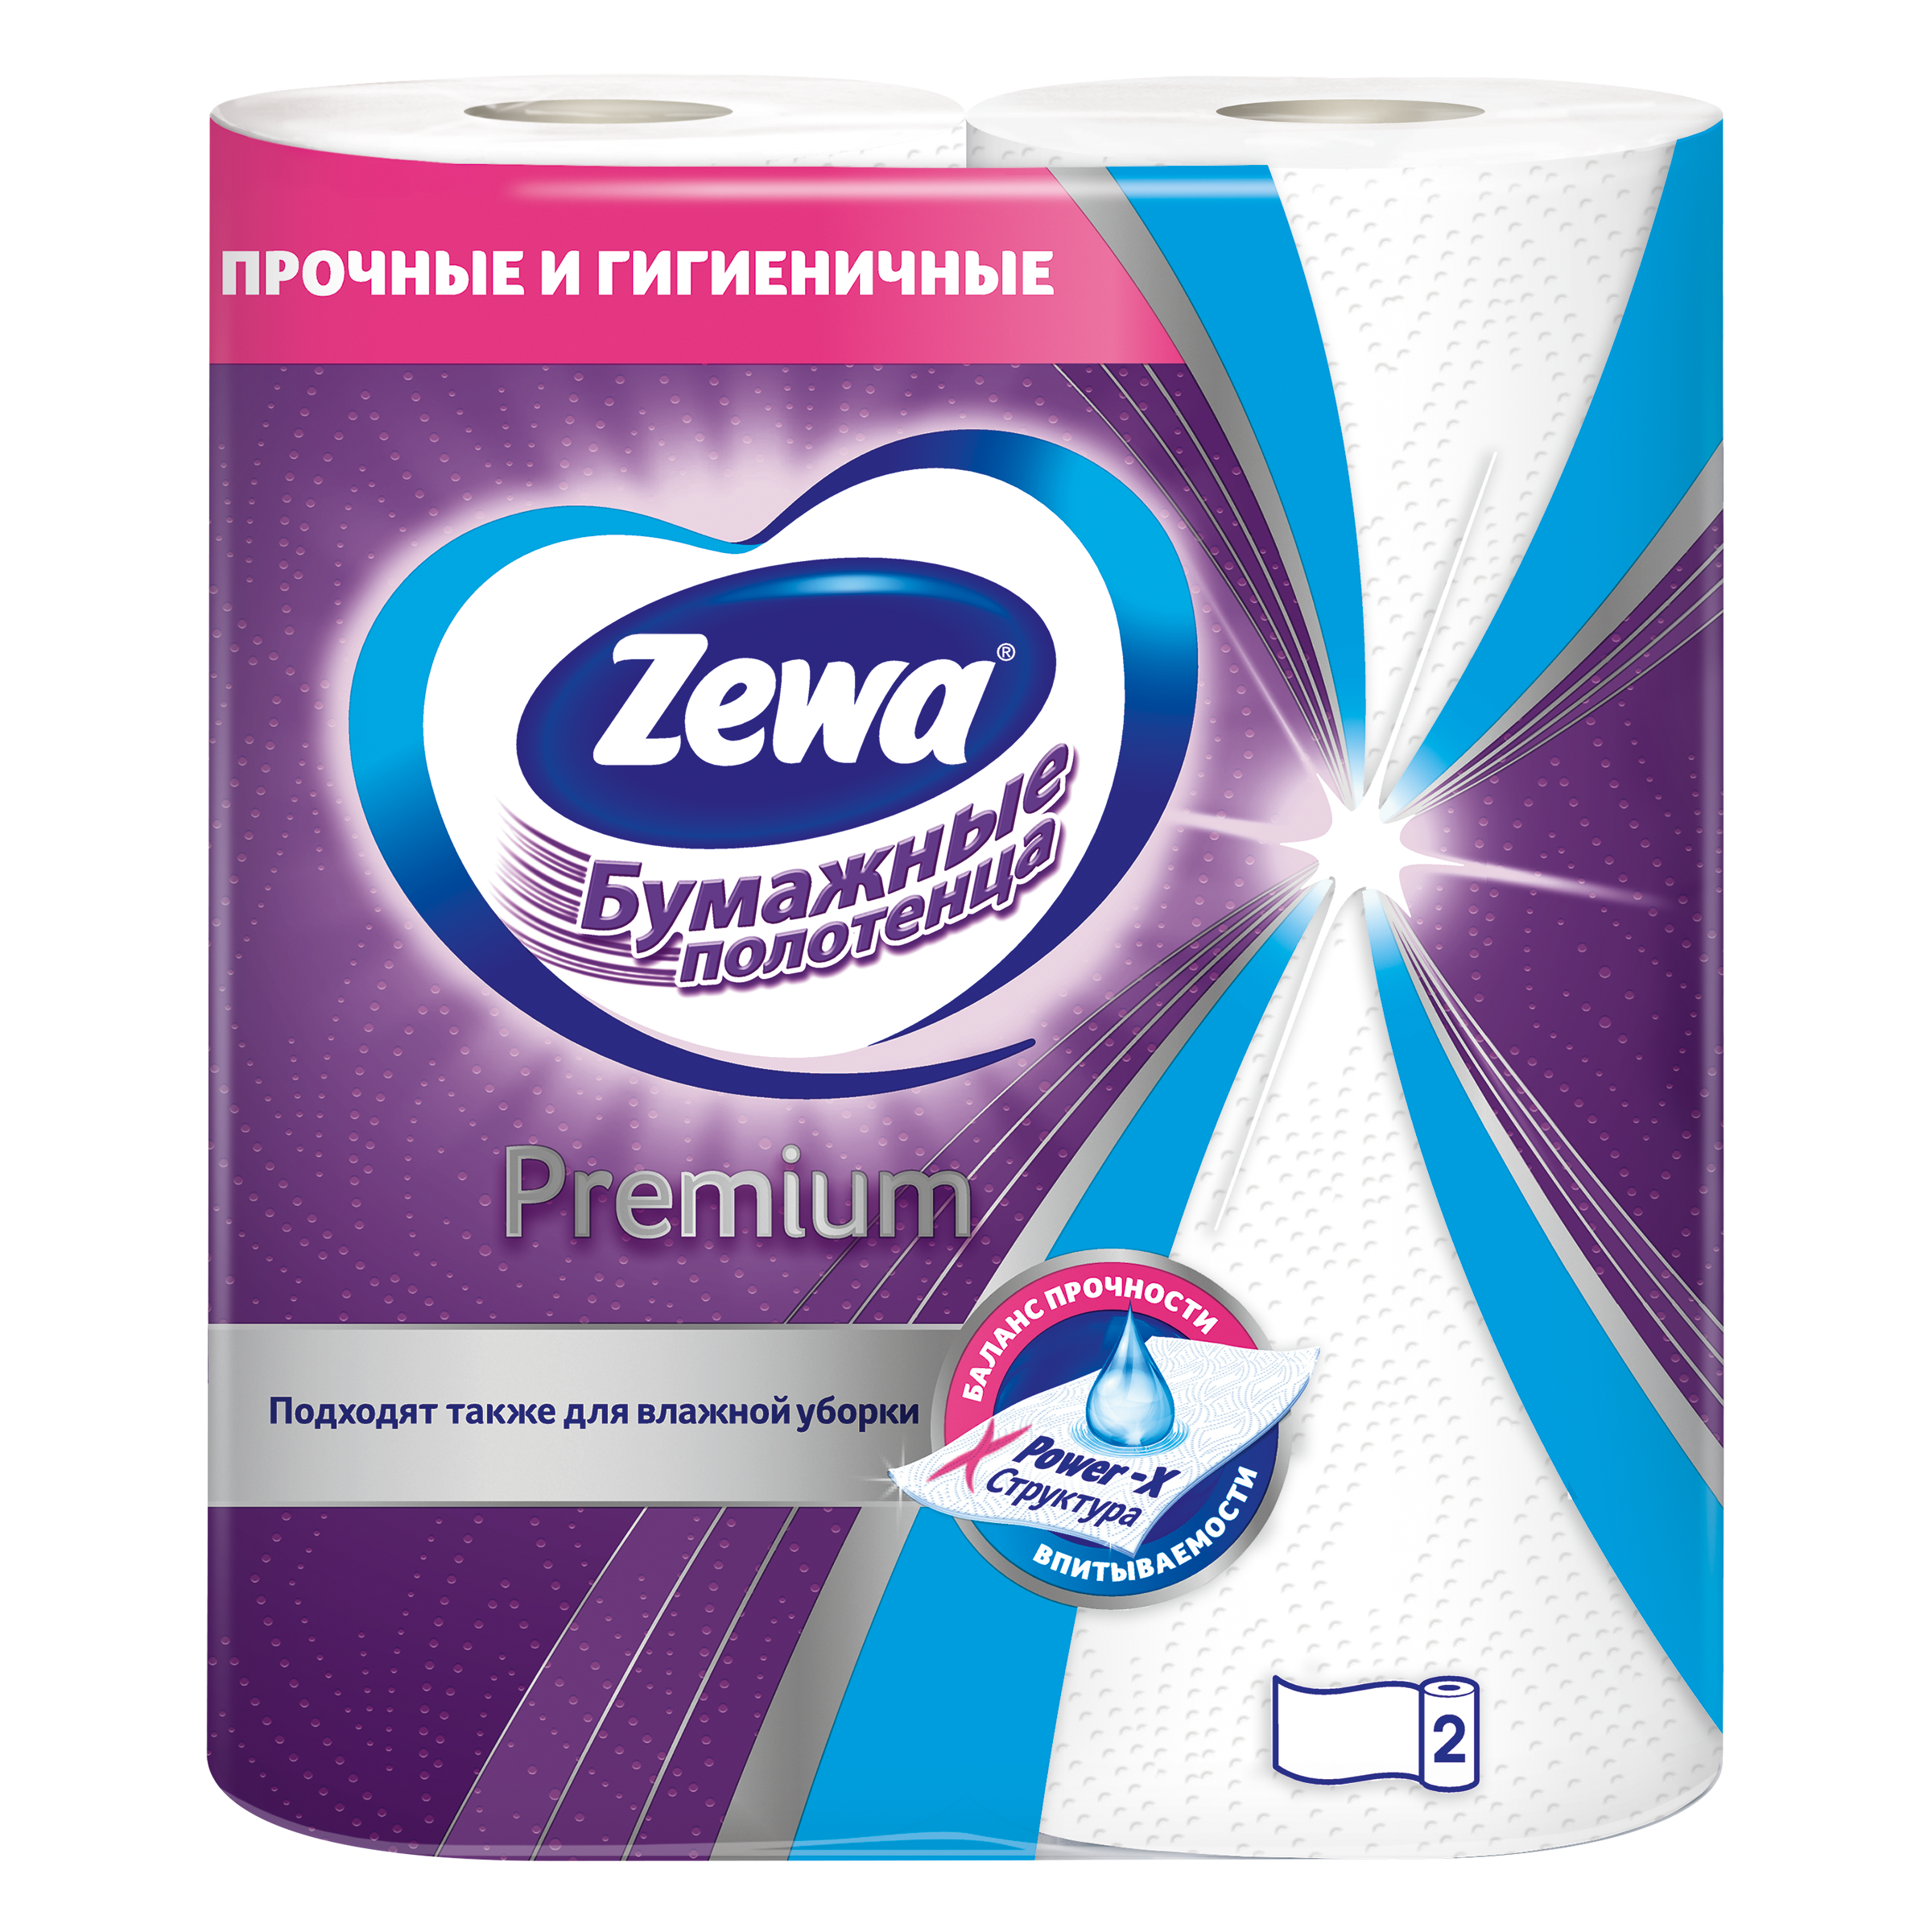 Озон бумажные полотенца. Бумажные полотенца Zewa Premium, 2 рулона. Zewa Premium полотенца. Бумажные полотенца Zewa. Бумажные полотенца Zewa 2в1 1 рулон.